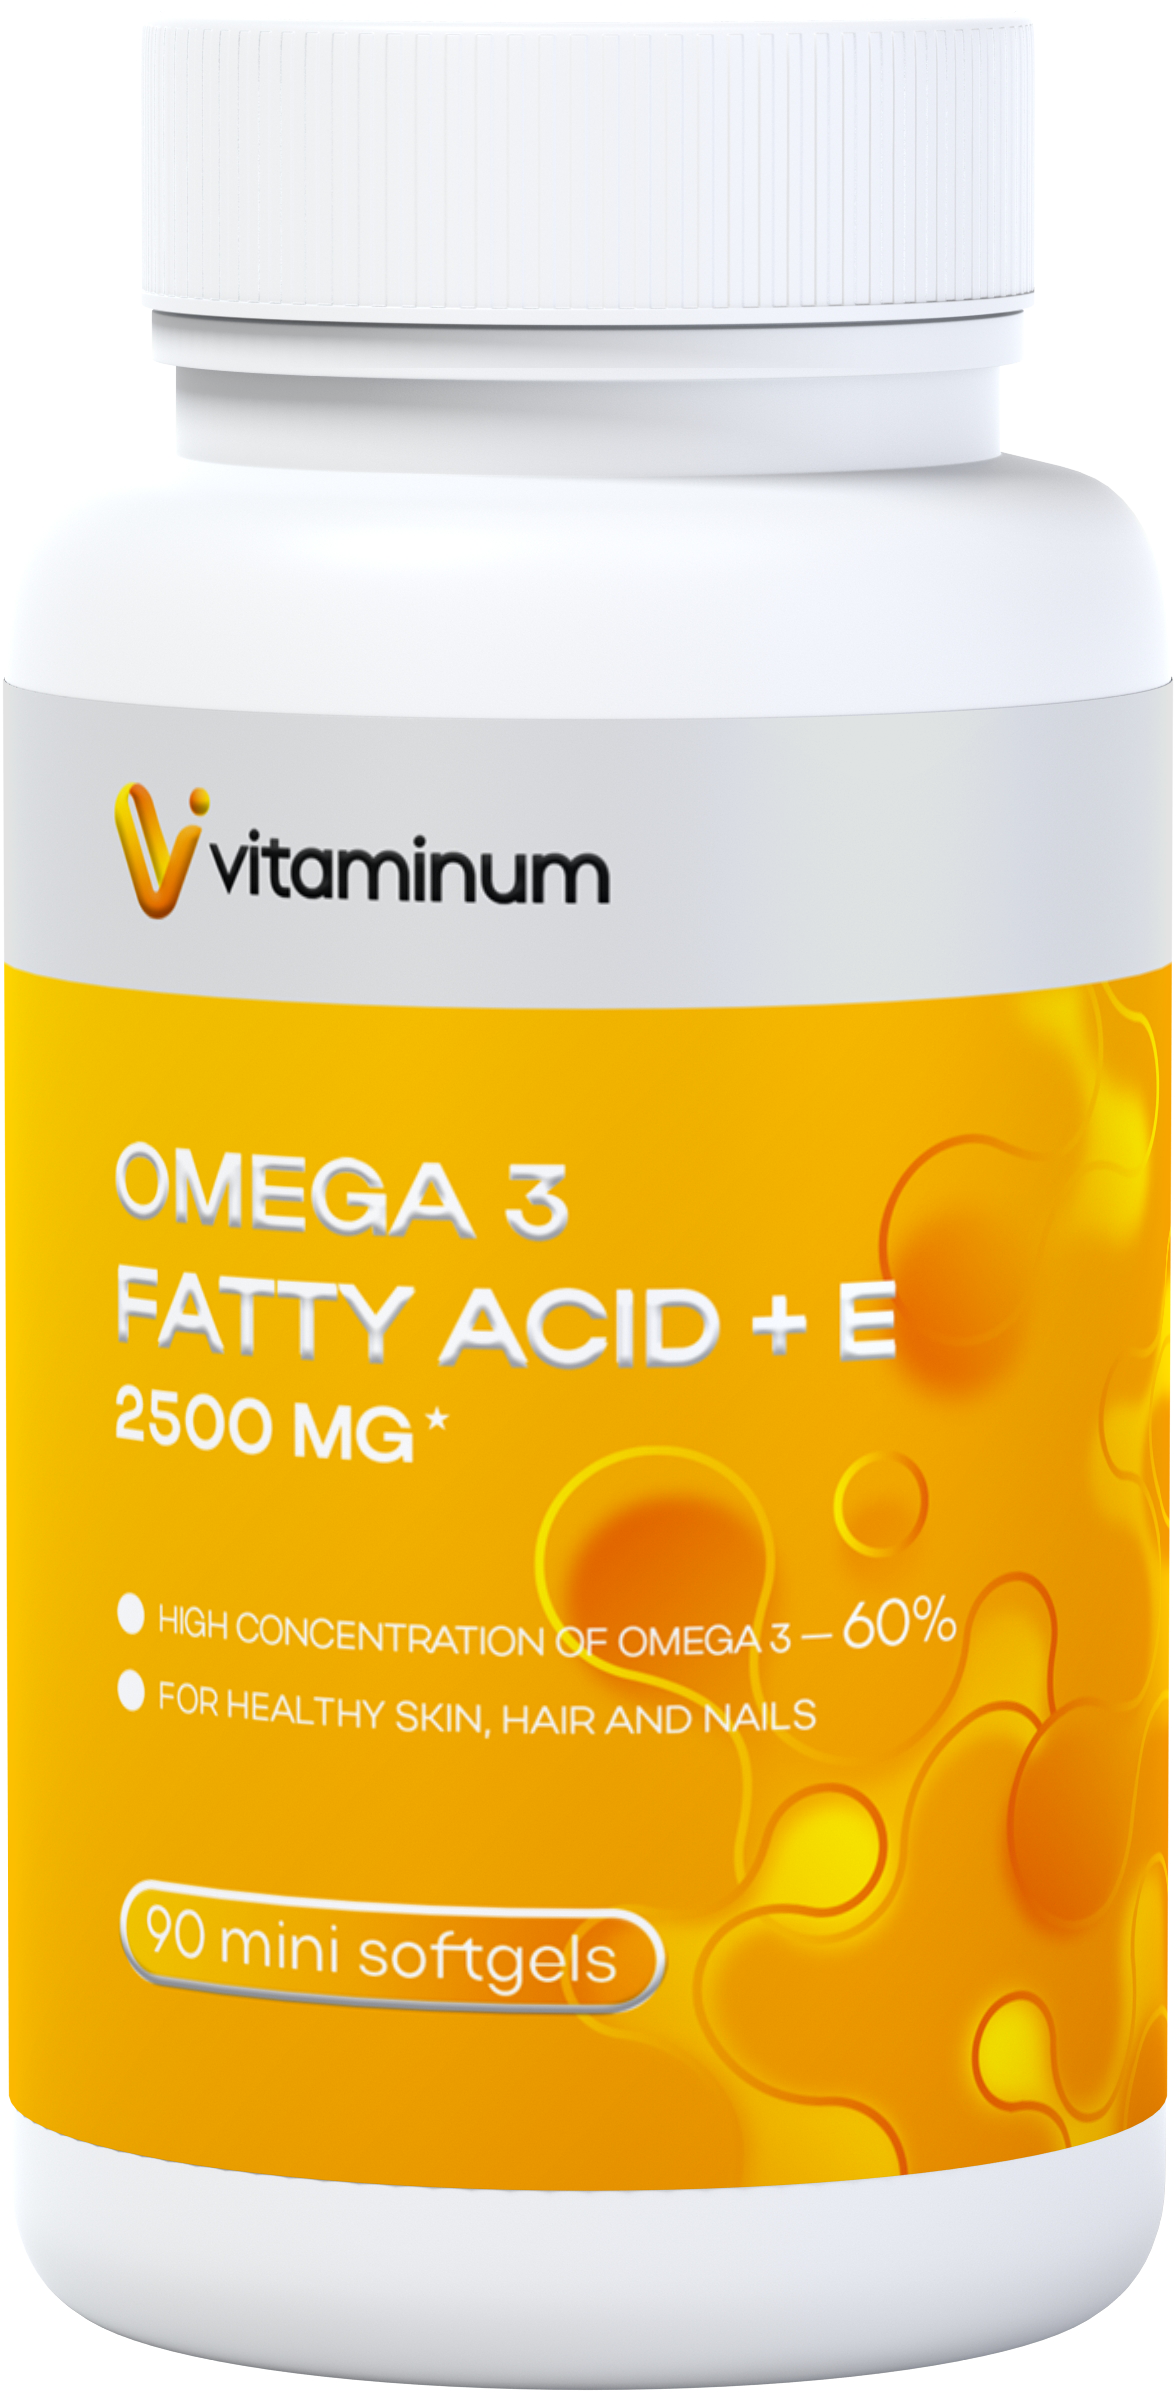  Vitaminum ОМЕГА 3 60% + витамин Е (2500 MG*) 90 капсул 700 мг   в Сосновом Боре